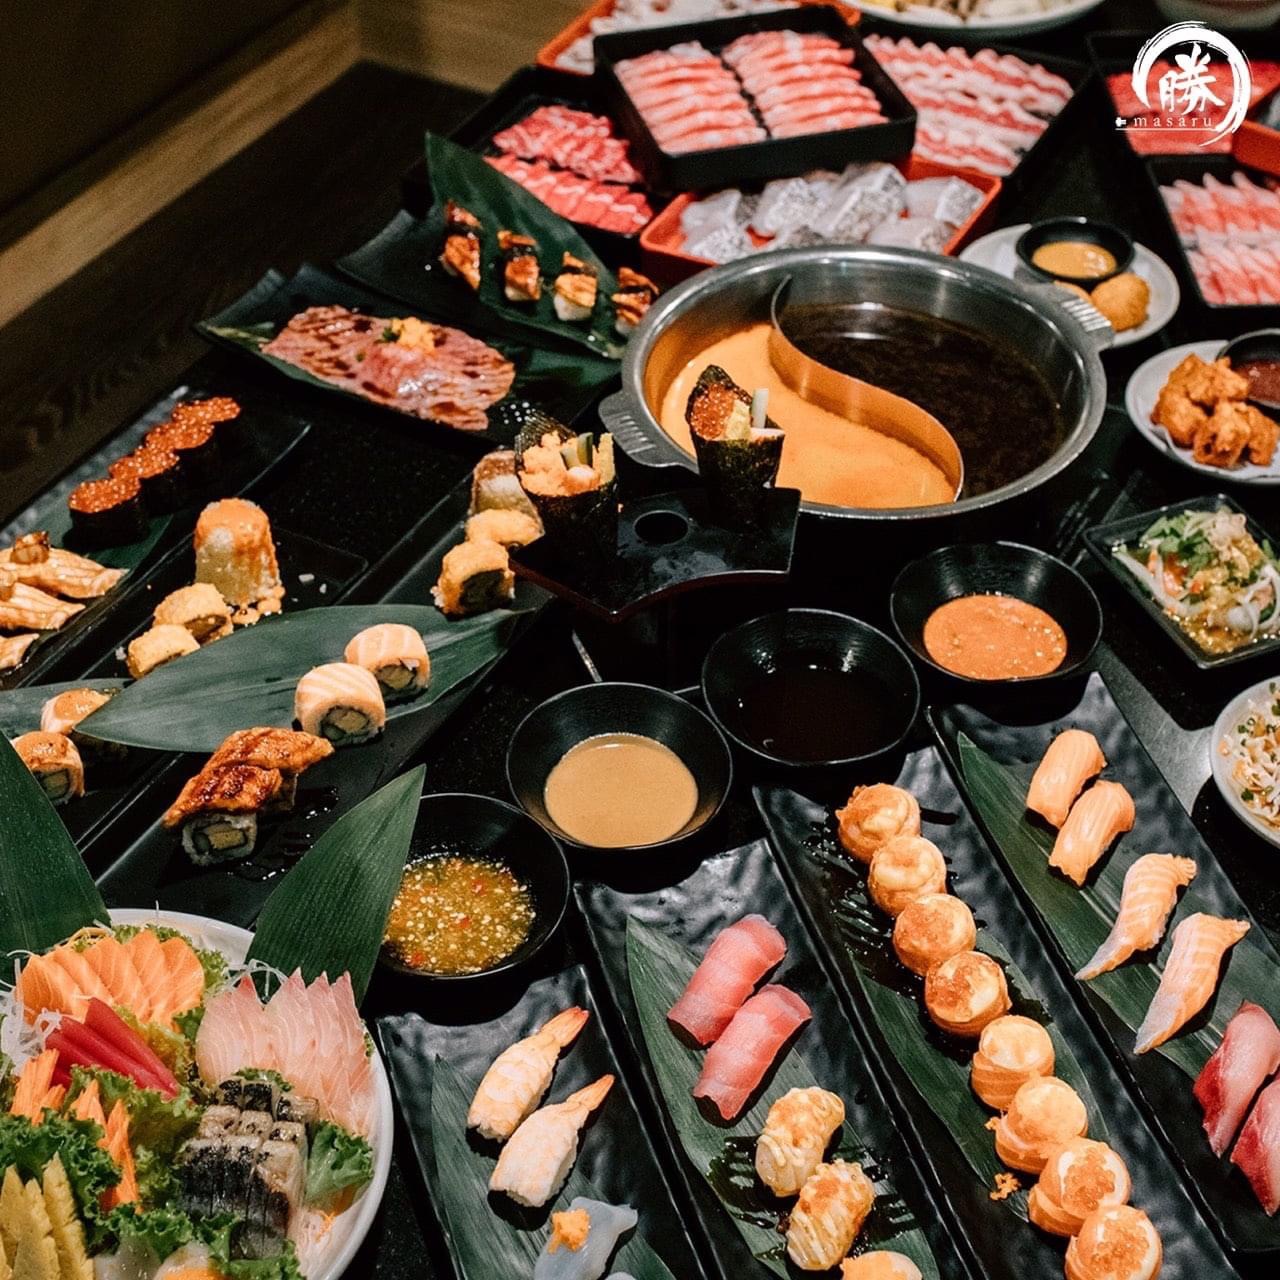 5 ร้านอาหารญี่ปุ่นเเบบบุฟเฟ่ต์ อร่อยเต็มอิ่มคุ้มค่าเกินราคา อัปเดตใหม่ปี 202112